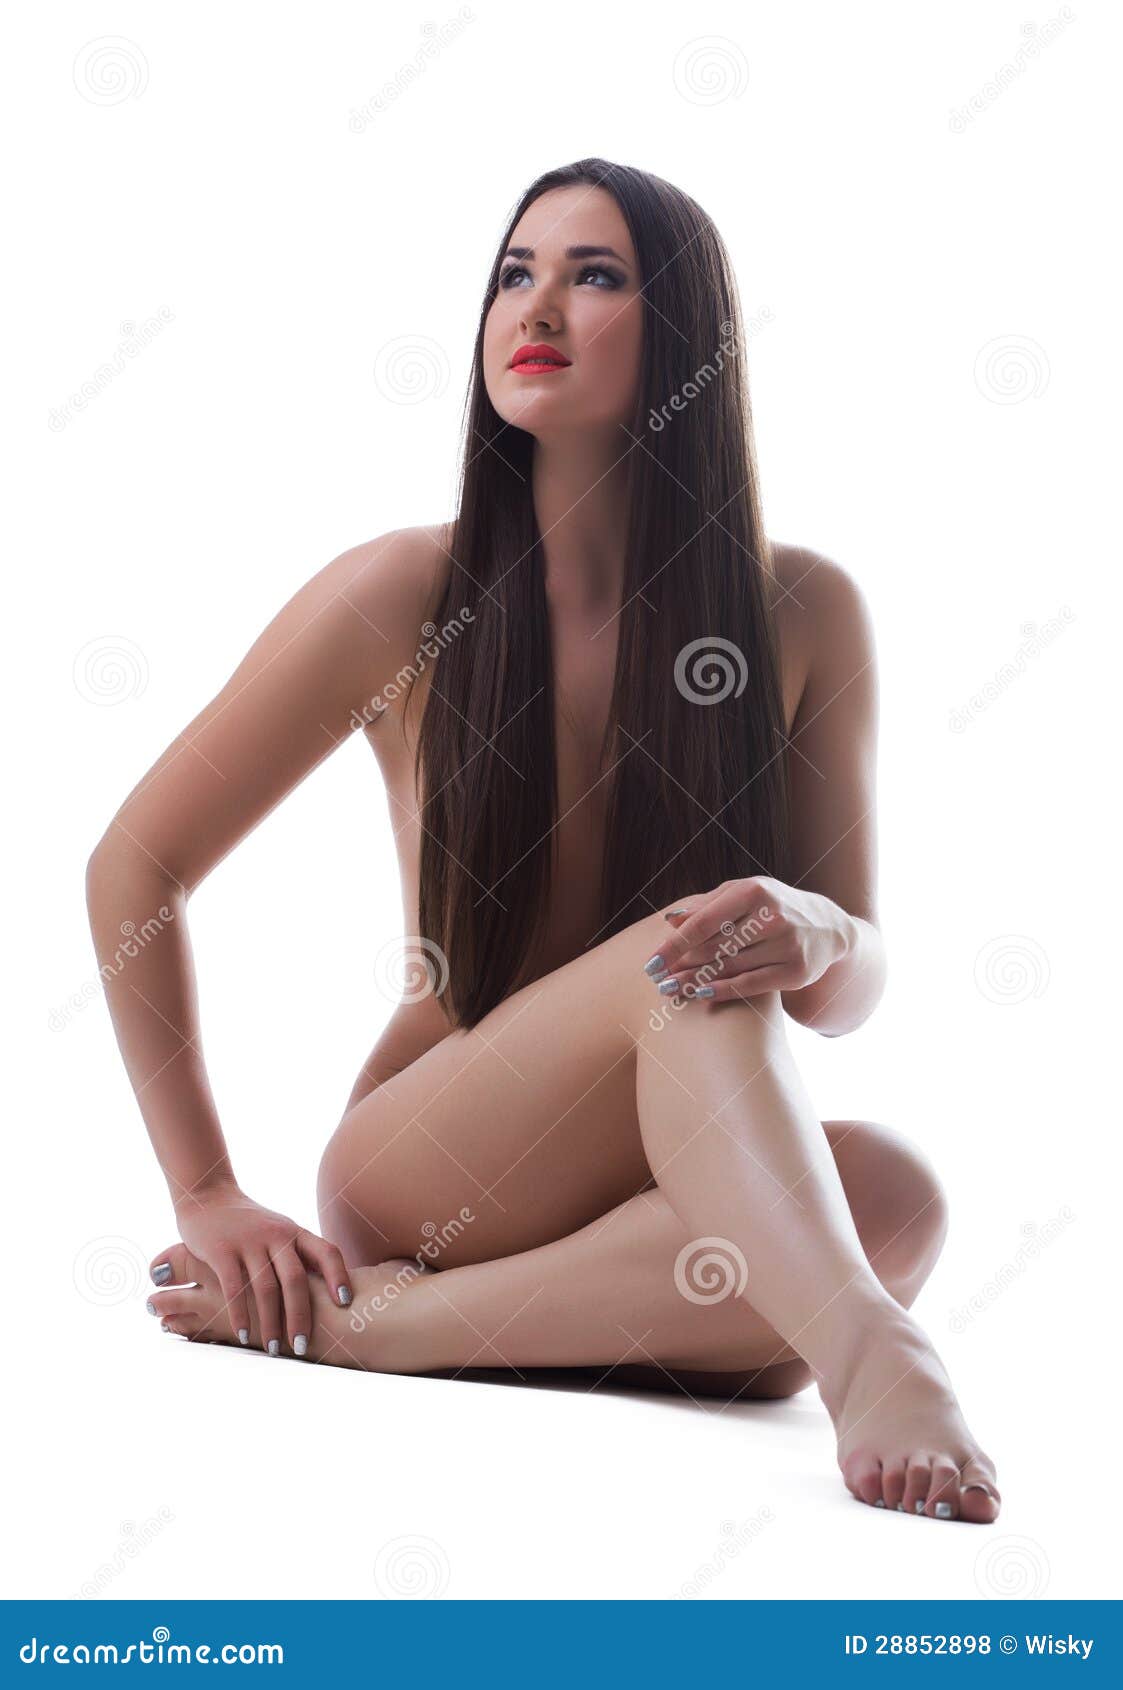 Hot Woman Posing Naked 101